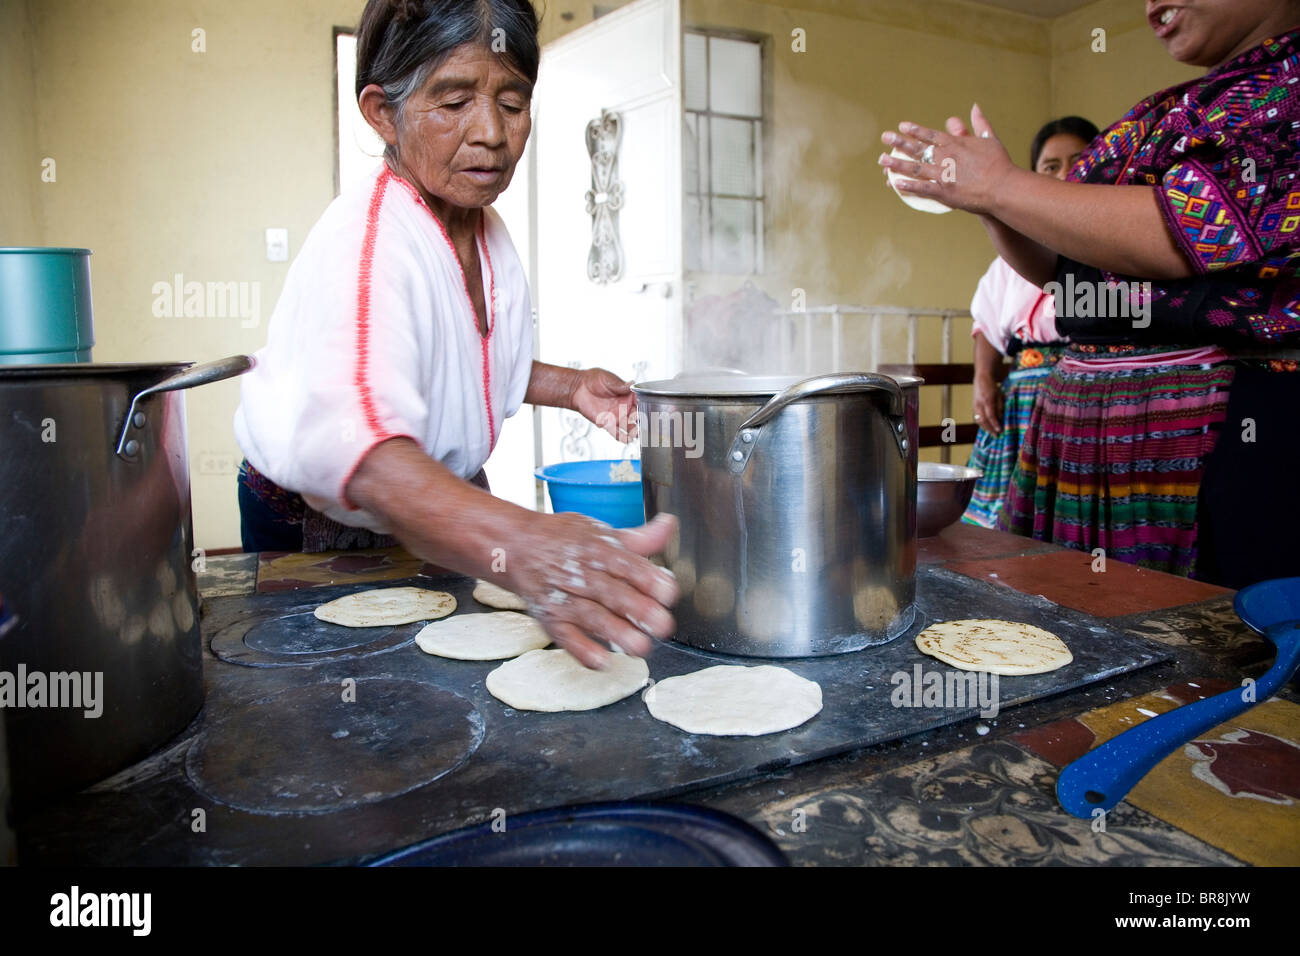 Eine ältere Frau bereitet Tortillas zum Mittagessen. Stockfoto